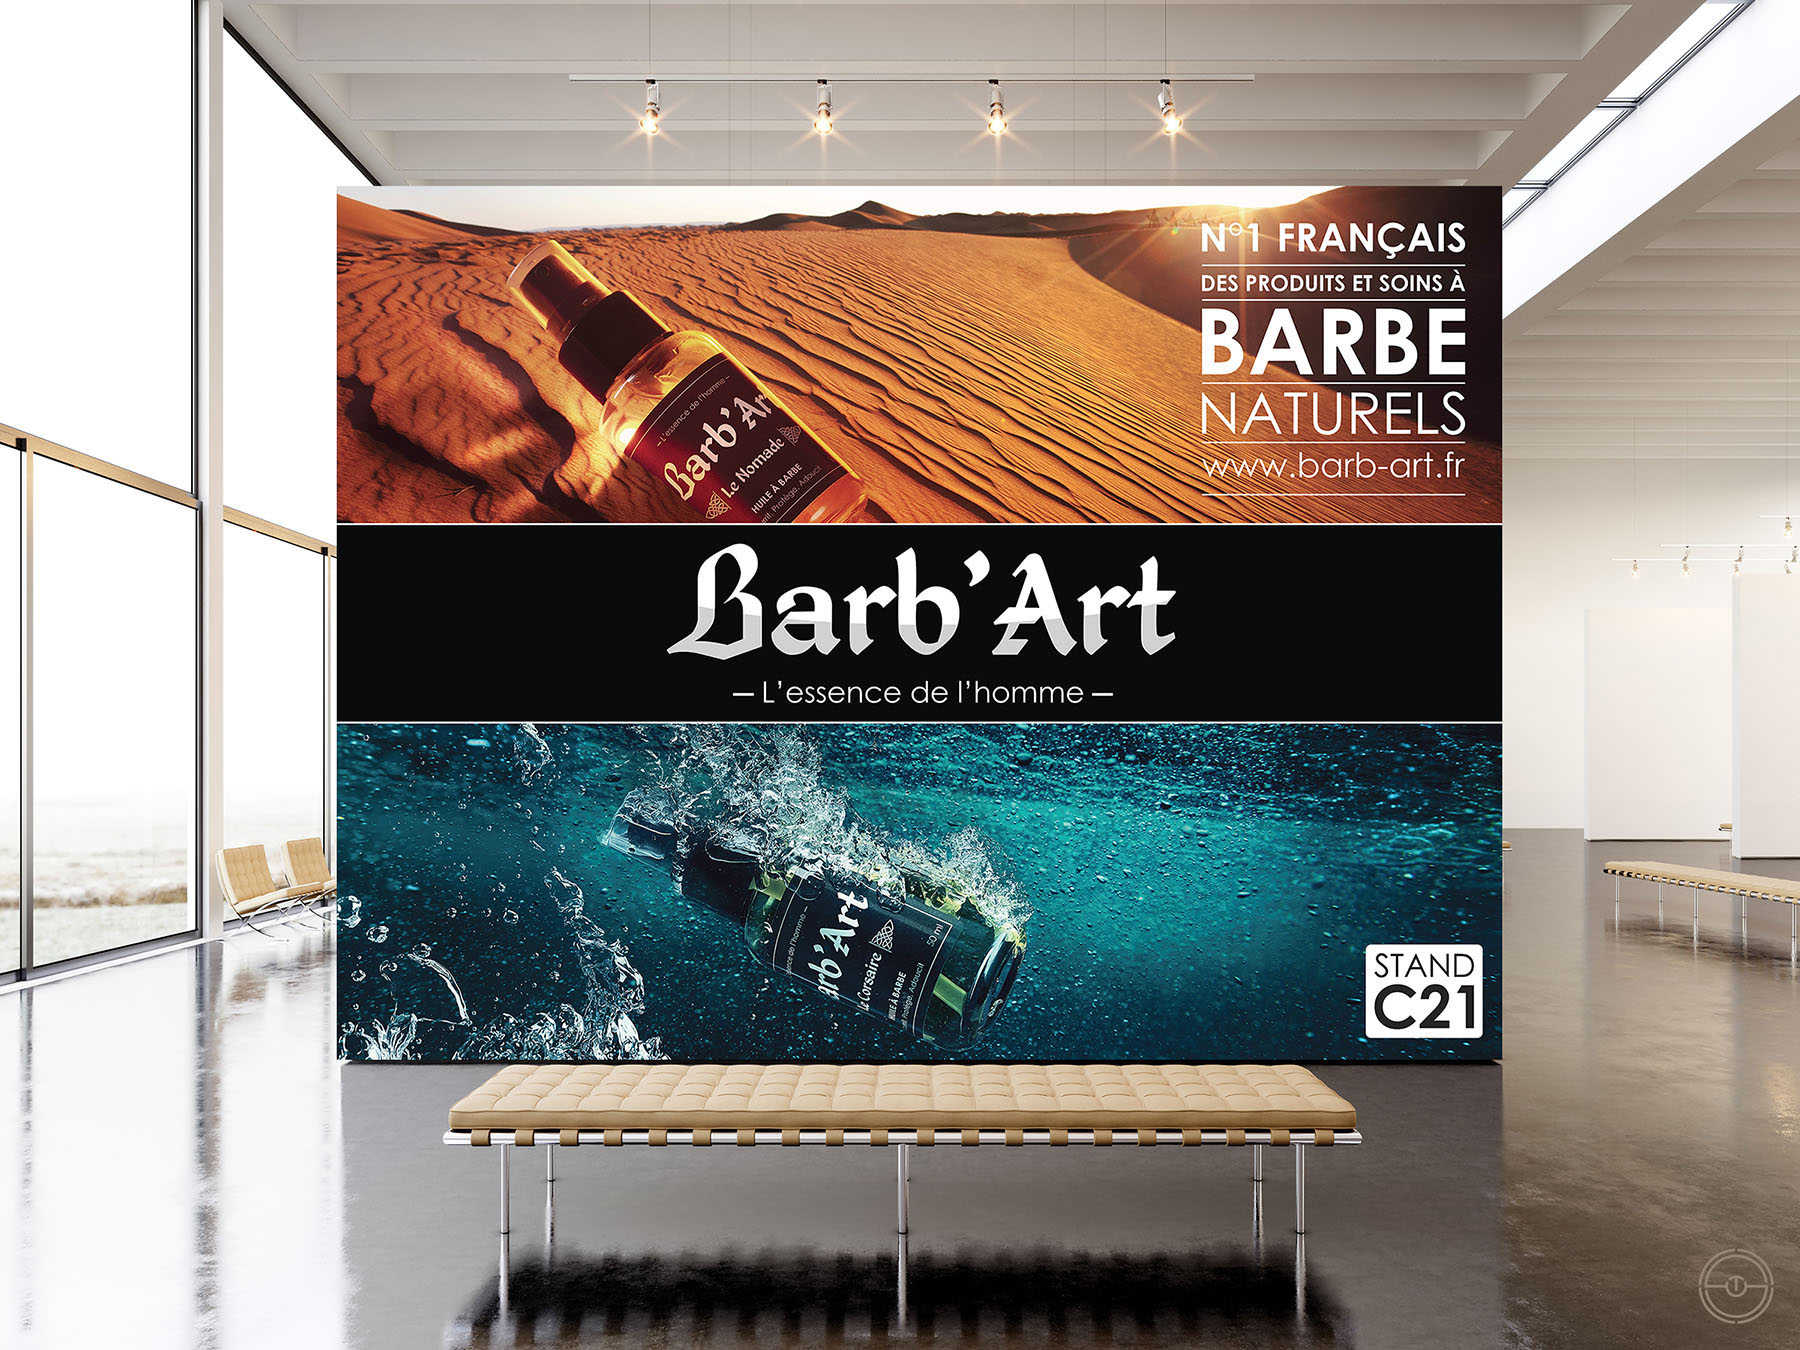  Visuel d'un panneau réalisé pour la marque Barb'Art